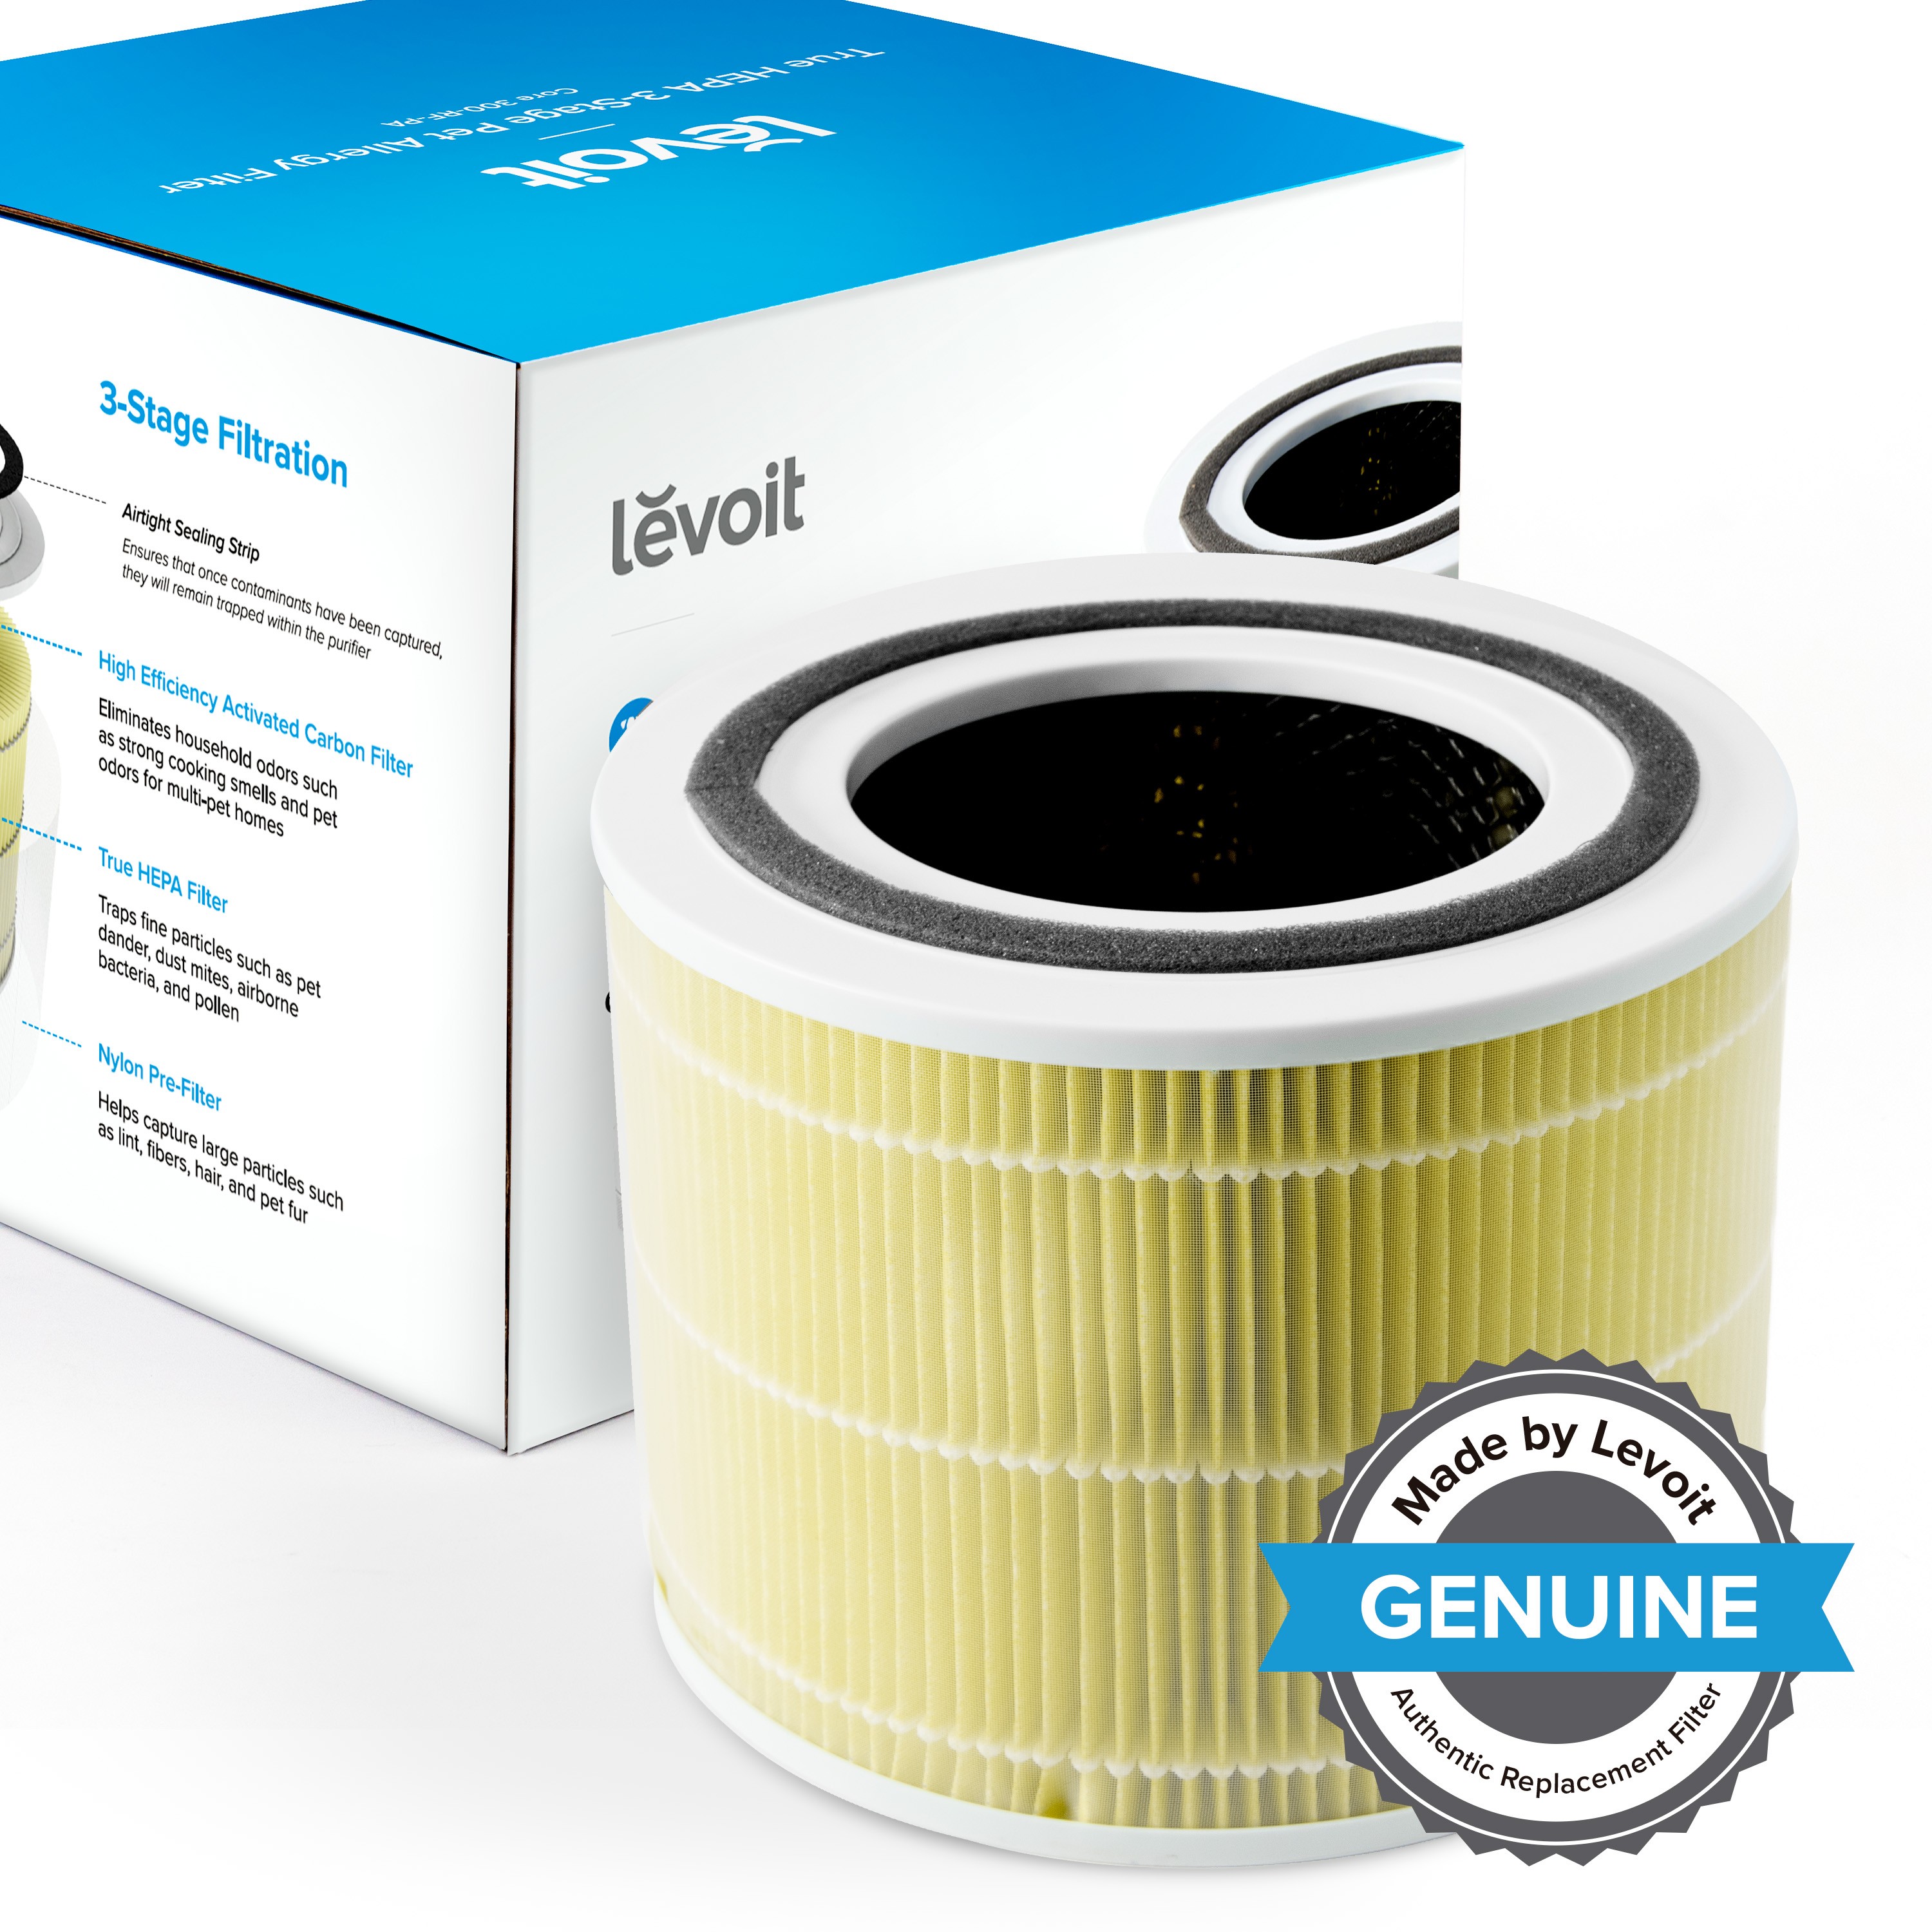 продаём Levoit Air Cleaner Filter Core 300 True HEPA 3-Stage (HEACAFLVNEA0038) в Украине - фото 4